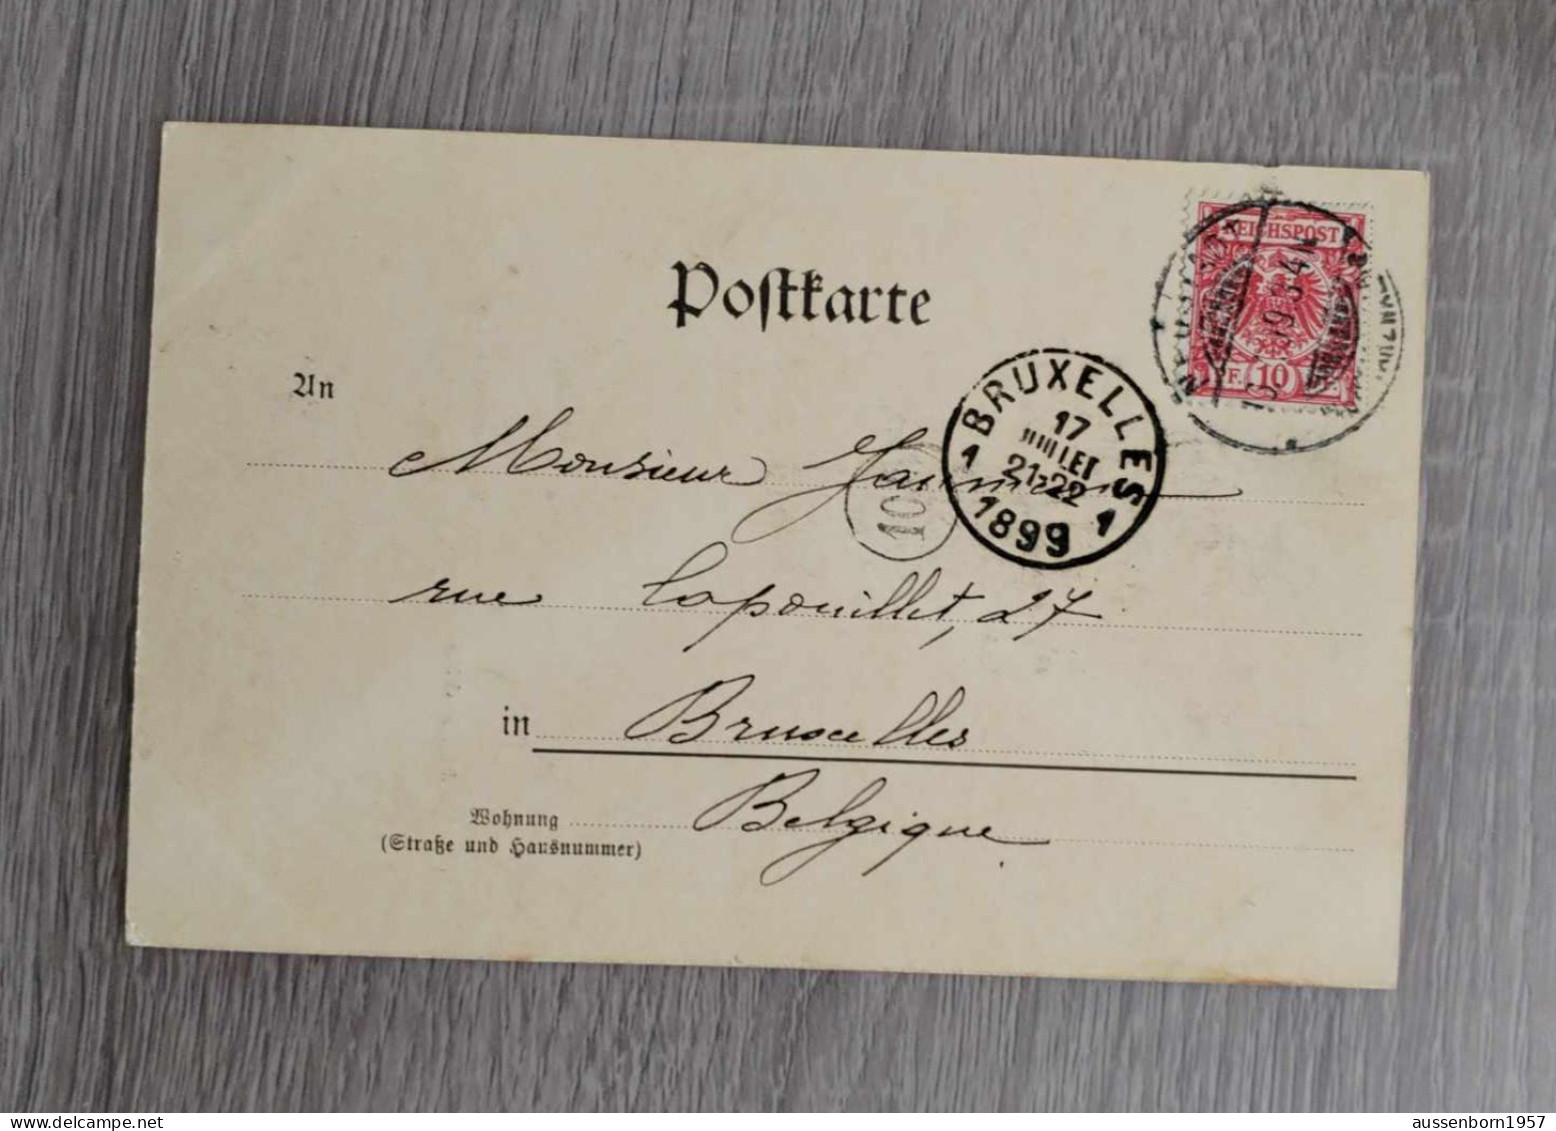 Schwarzwaldhaus : Poststempel Jahr 1899 - Feldberg